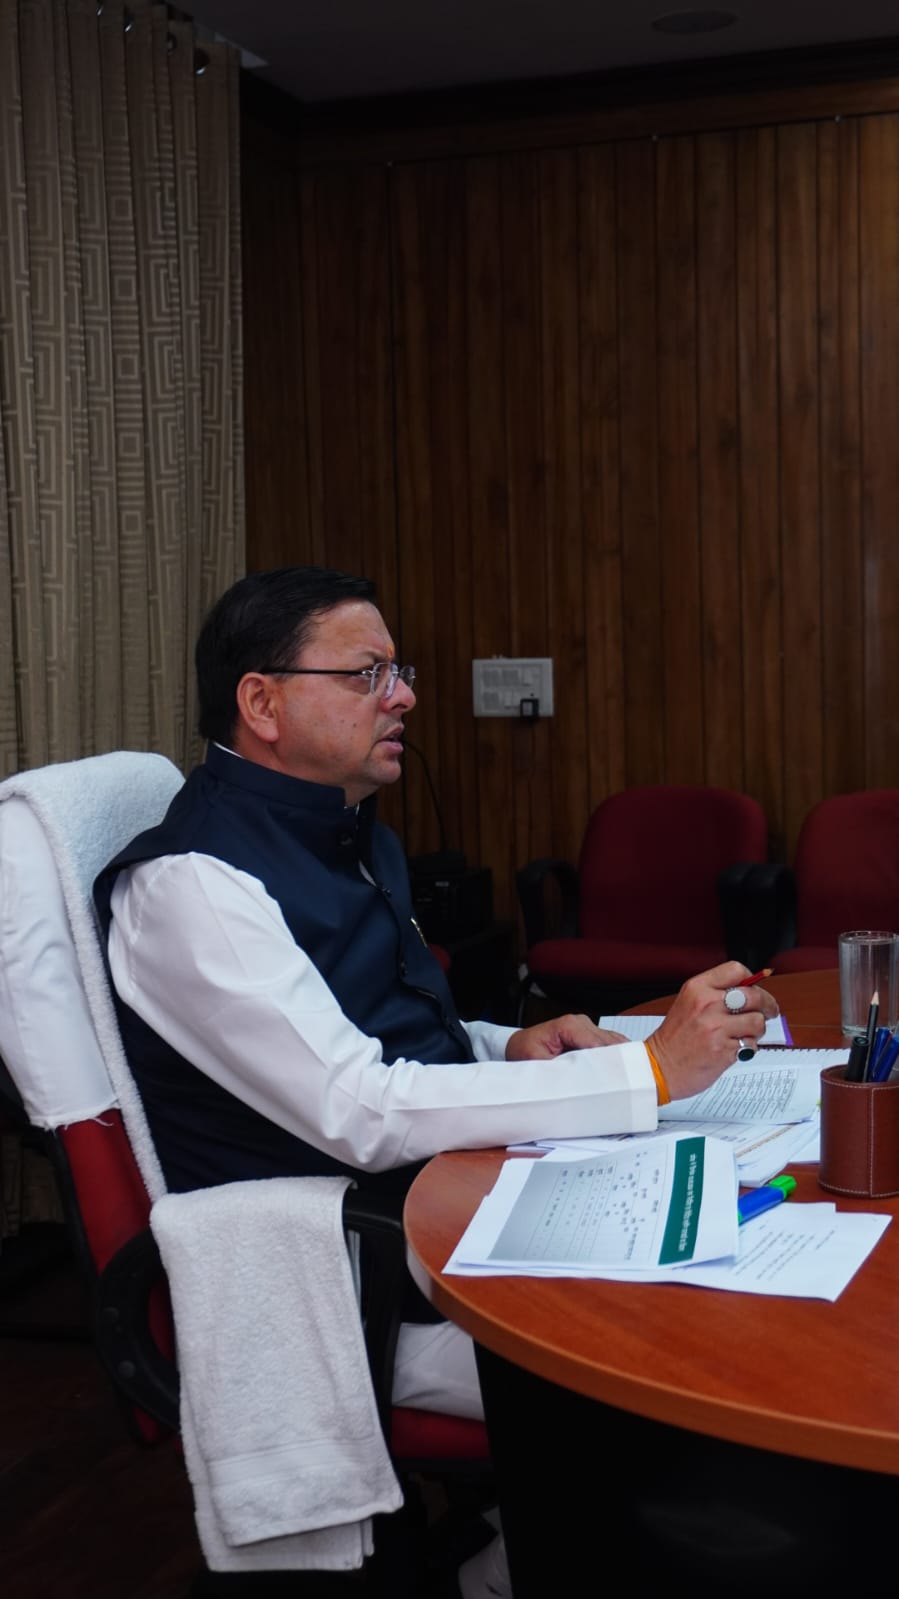 मुख्यमंत्री ने वनाग्नि, चारधाम यात्रा, पेयजल व विद्युत आपूर्ति को लेकर की महत्वपूर्ण बैठक